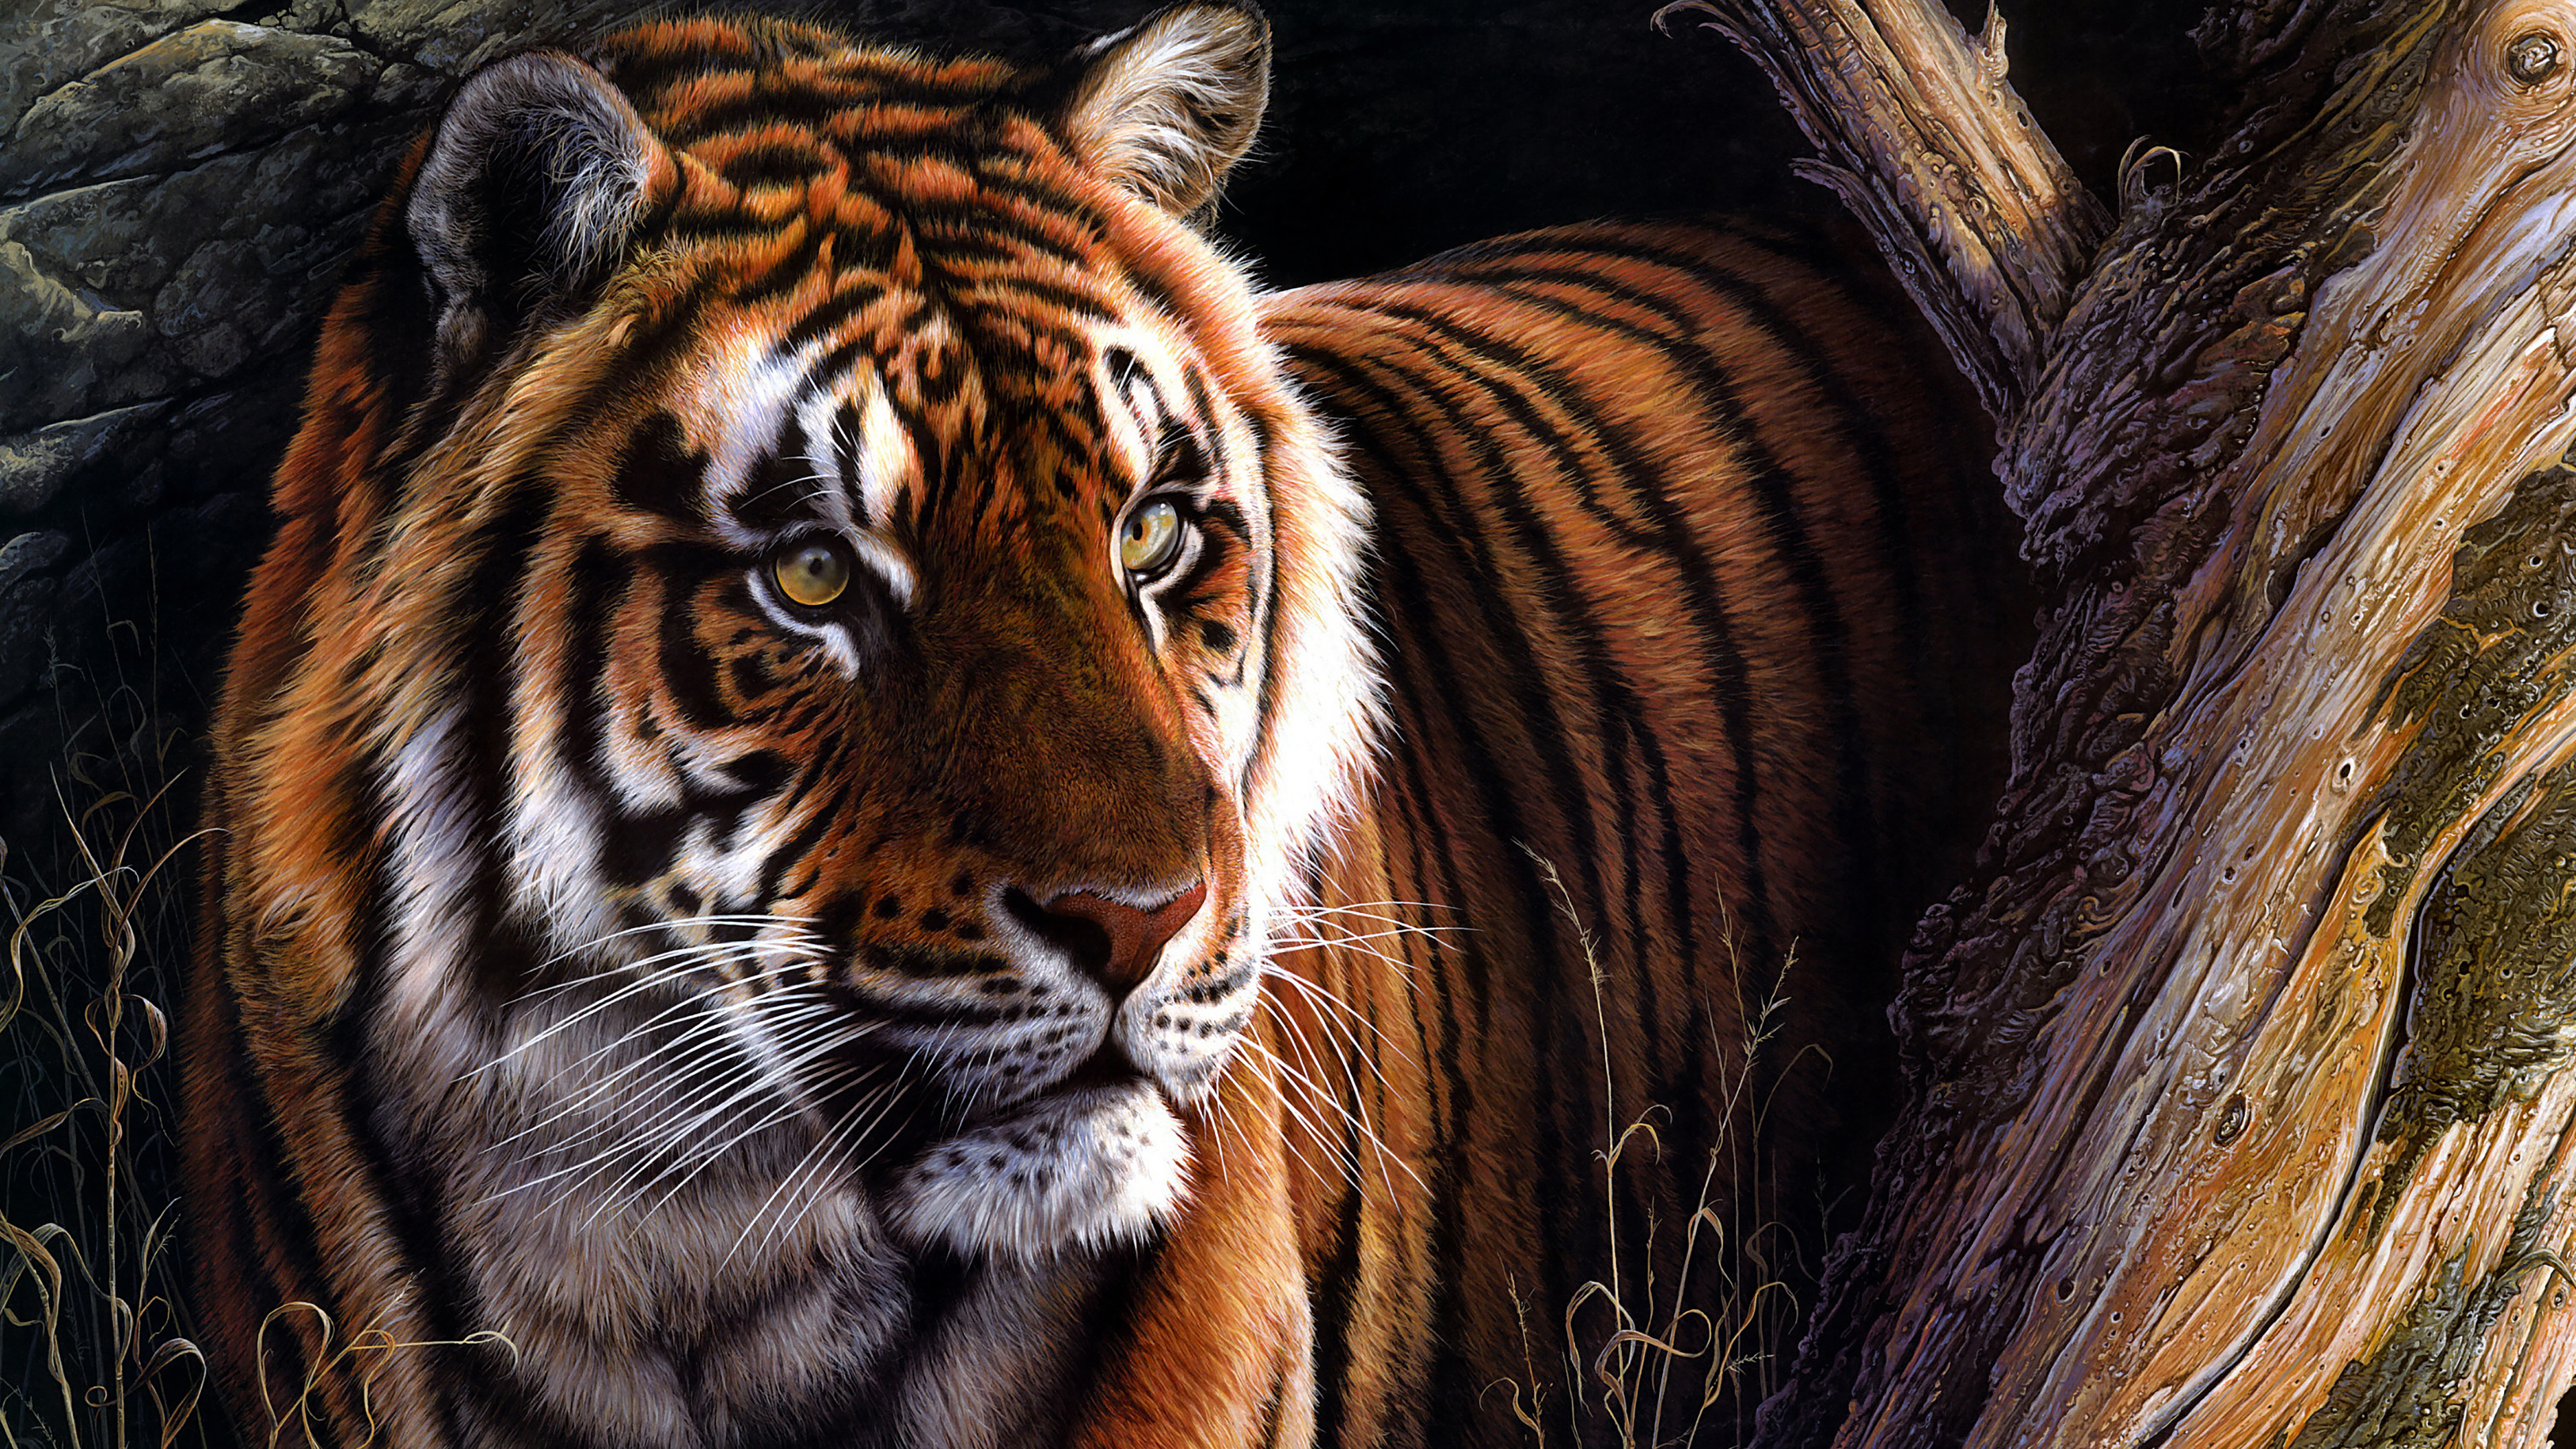 Tiger Oil Paint 4k - 4k Animal Wallpaper For Mobile (3840x2160)